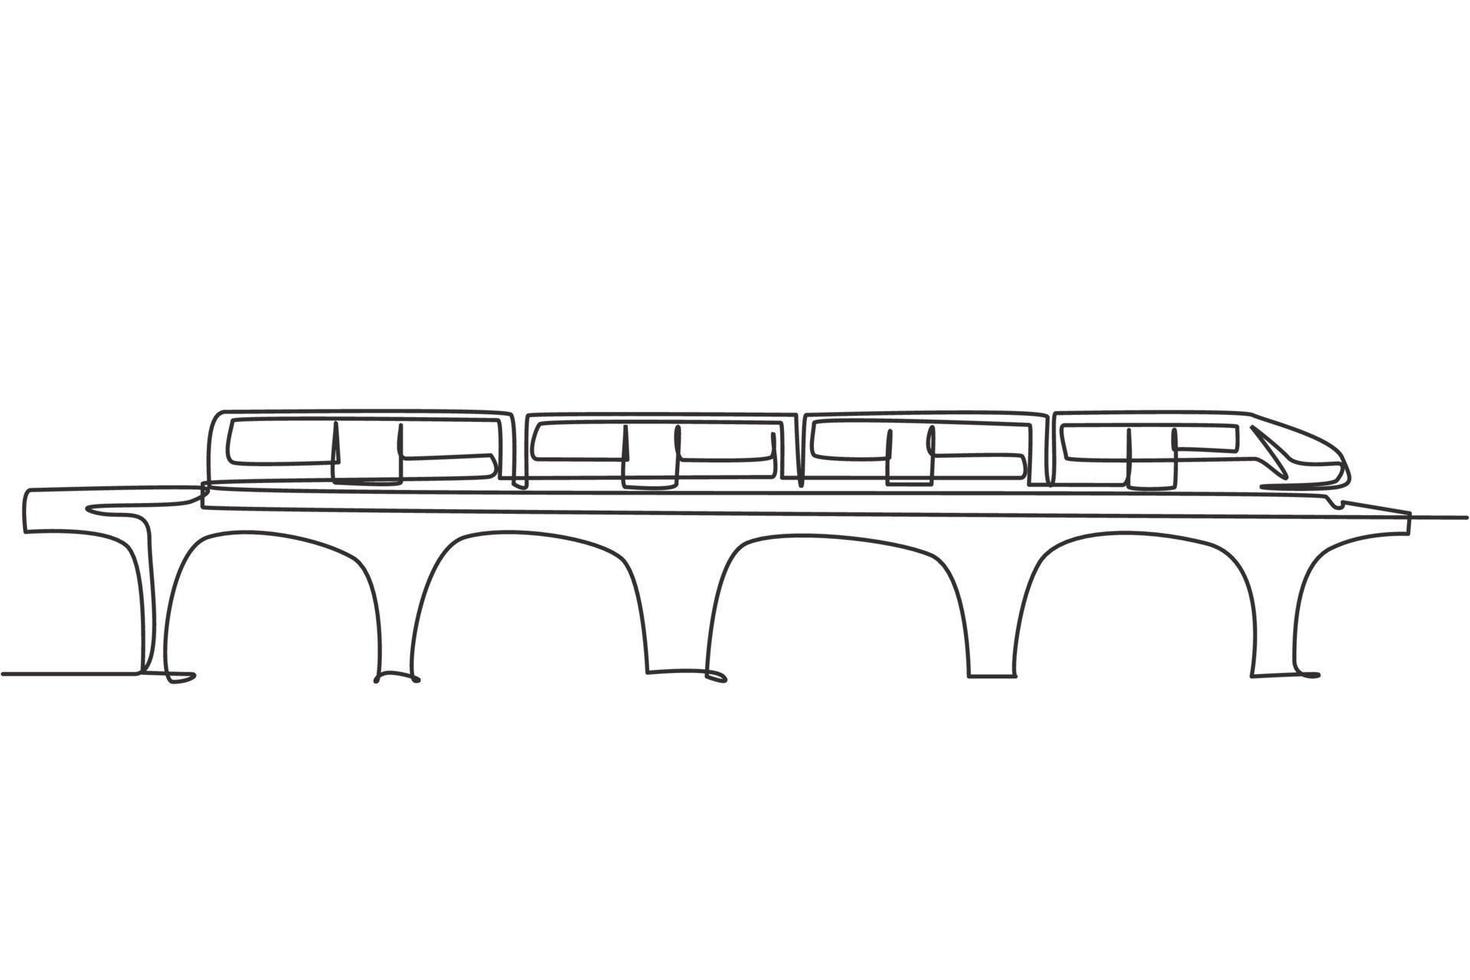 un unico disegno a tratteggio del treno visto frontalmente si prepara a trasportare i passeggeri in modo rapido, sicuro e confortevole a destinazione. moderna linea continua disegnare grafica vettoriale illustrazione.